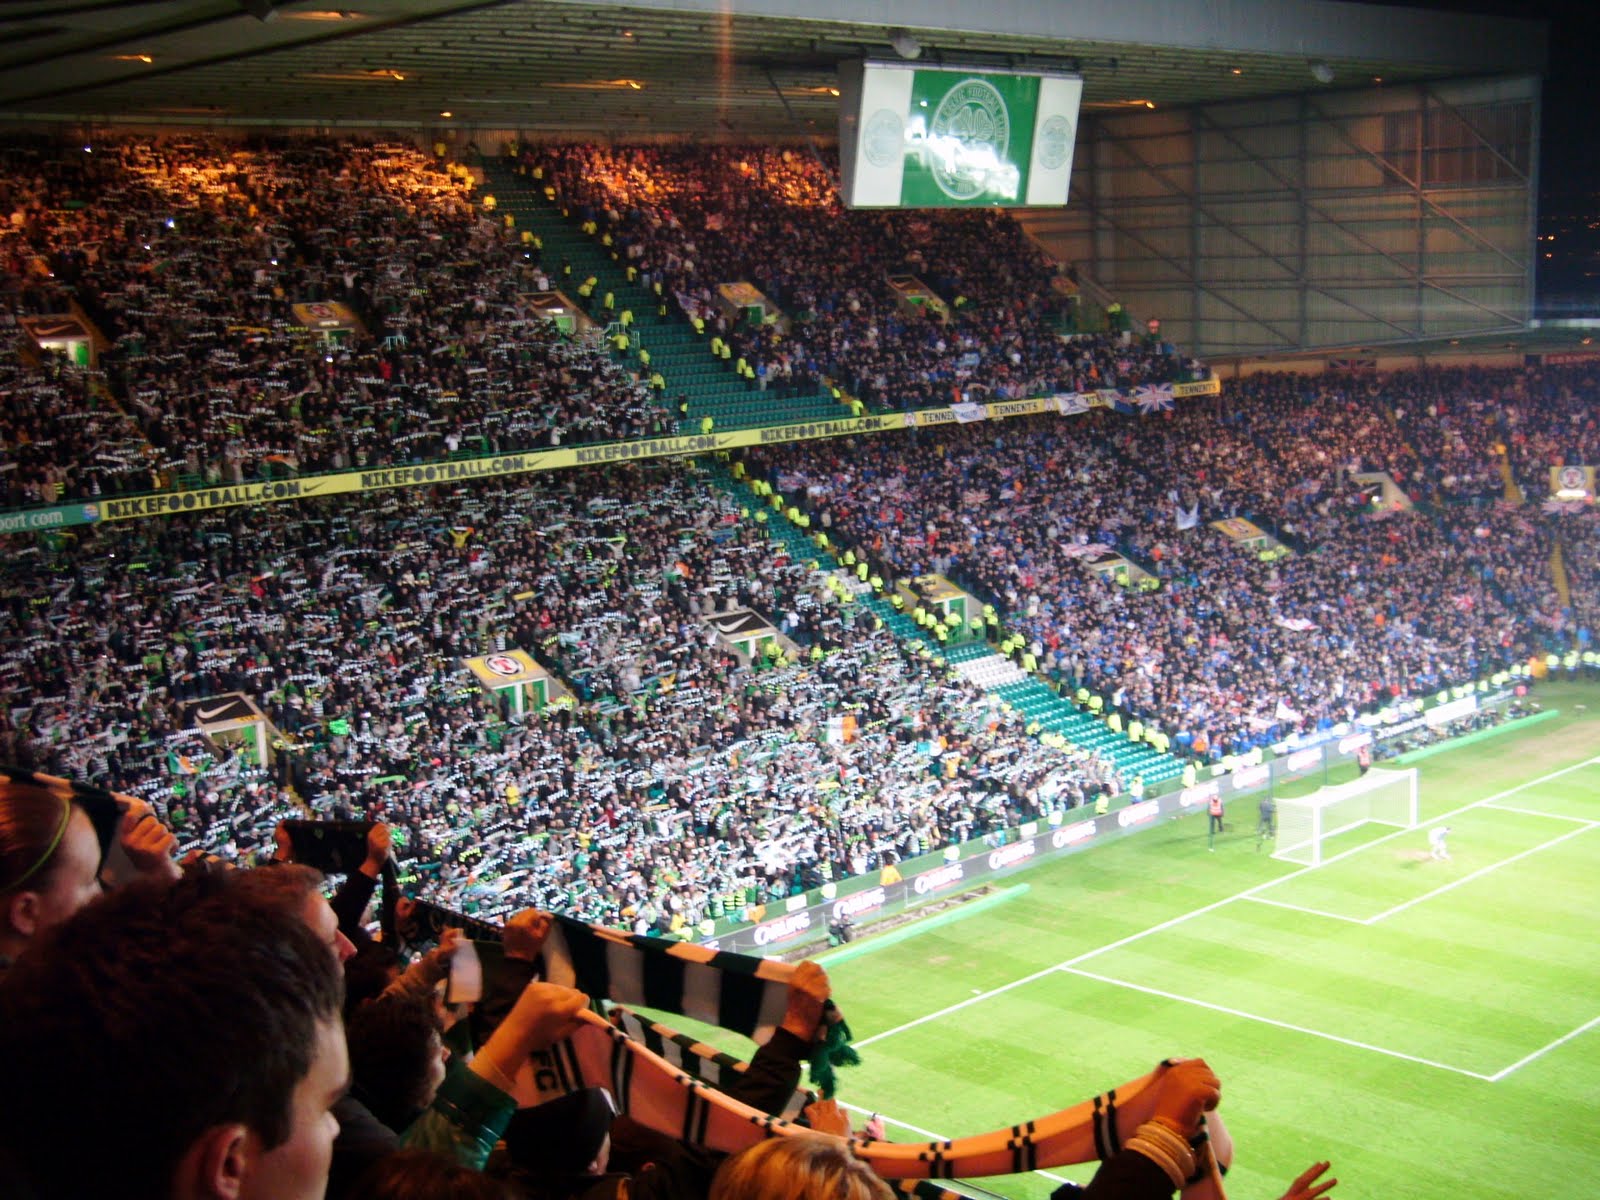 My Football Travels: Celtic Park (Celtic v Rangers)1600 x 1200